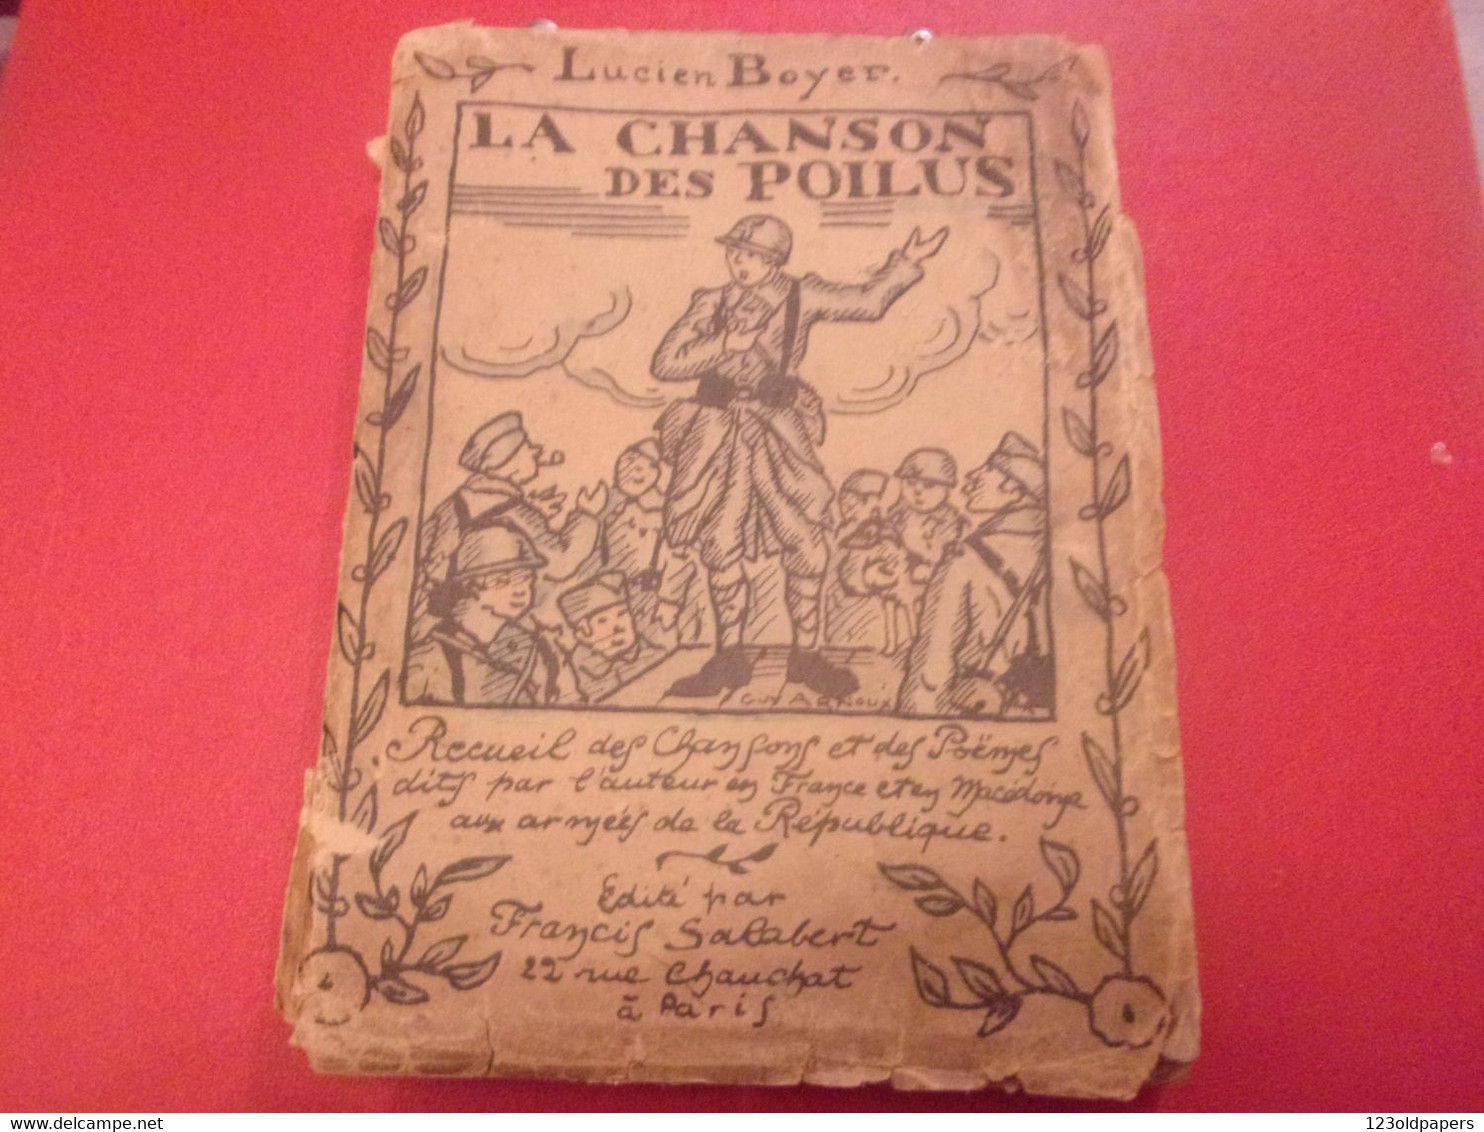 ️ La Chanson Des Poilus Lucien Boyer ENVOI DE L AUTEUR  SALABERT 1918 ILLUSTRE ARNOUX  / DE VALERIO WWI - Weltkrieg 1914-18